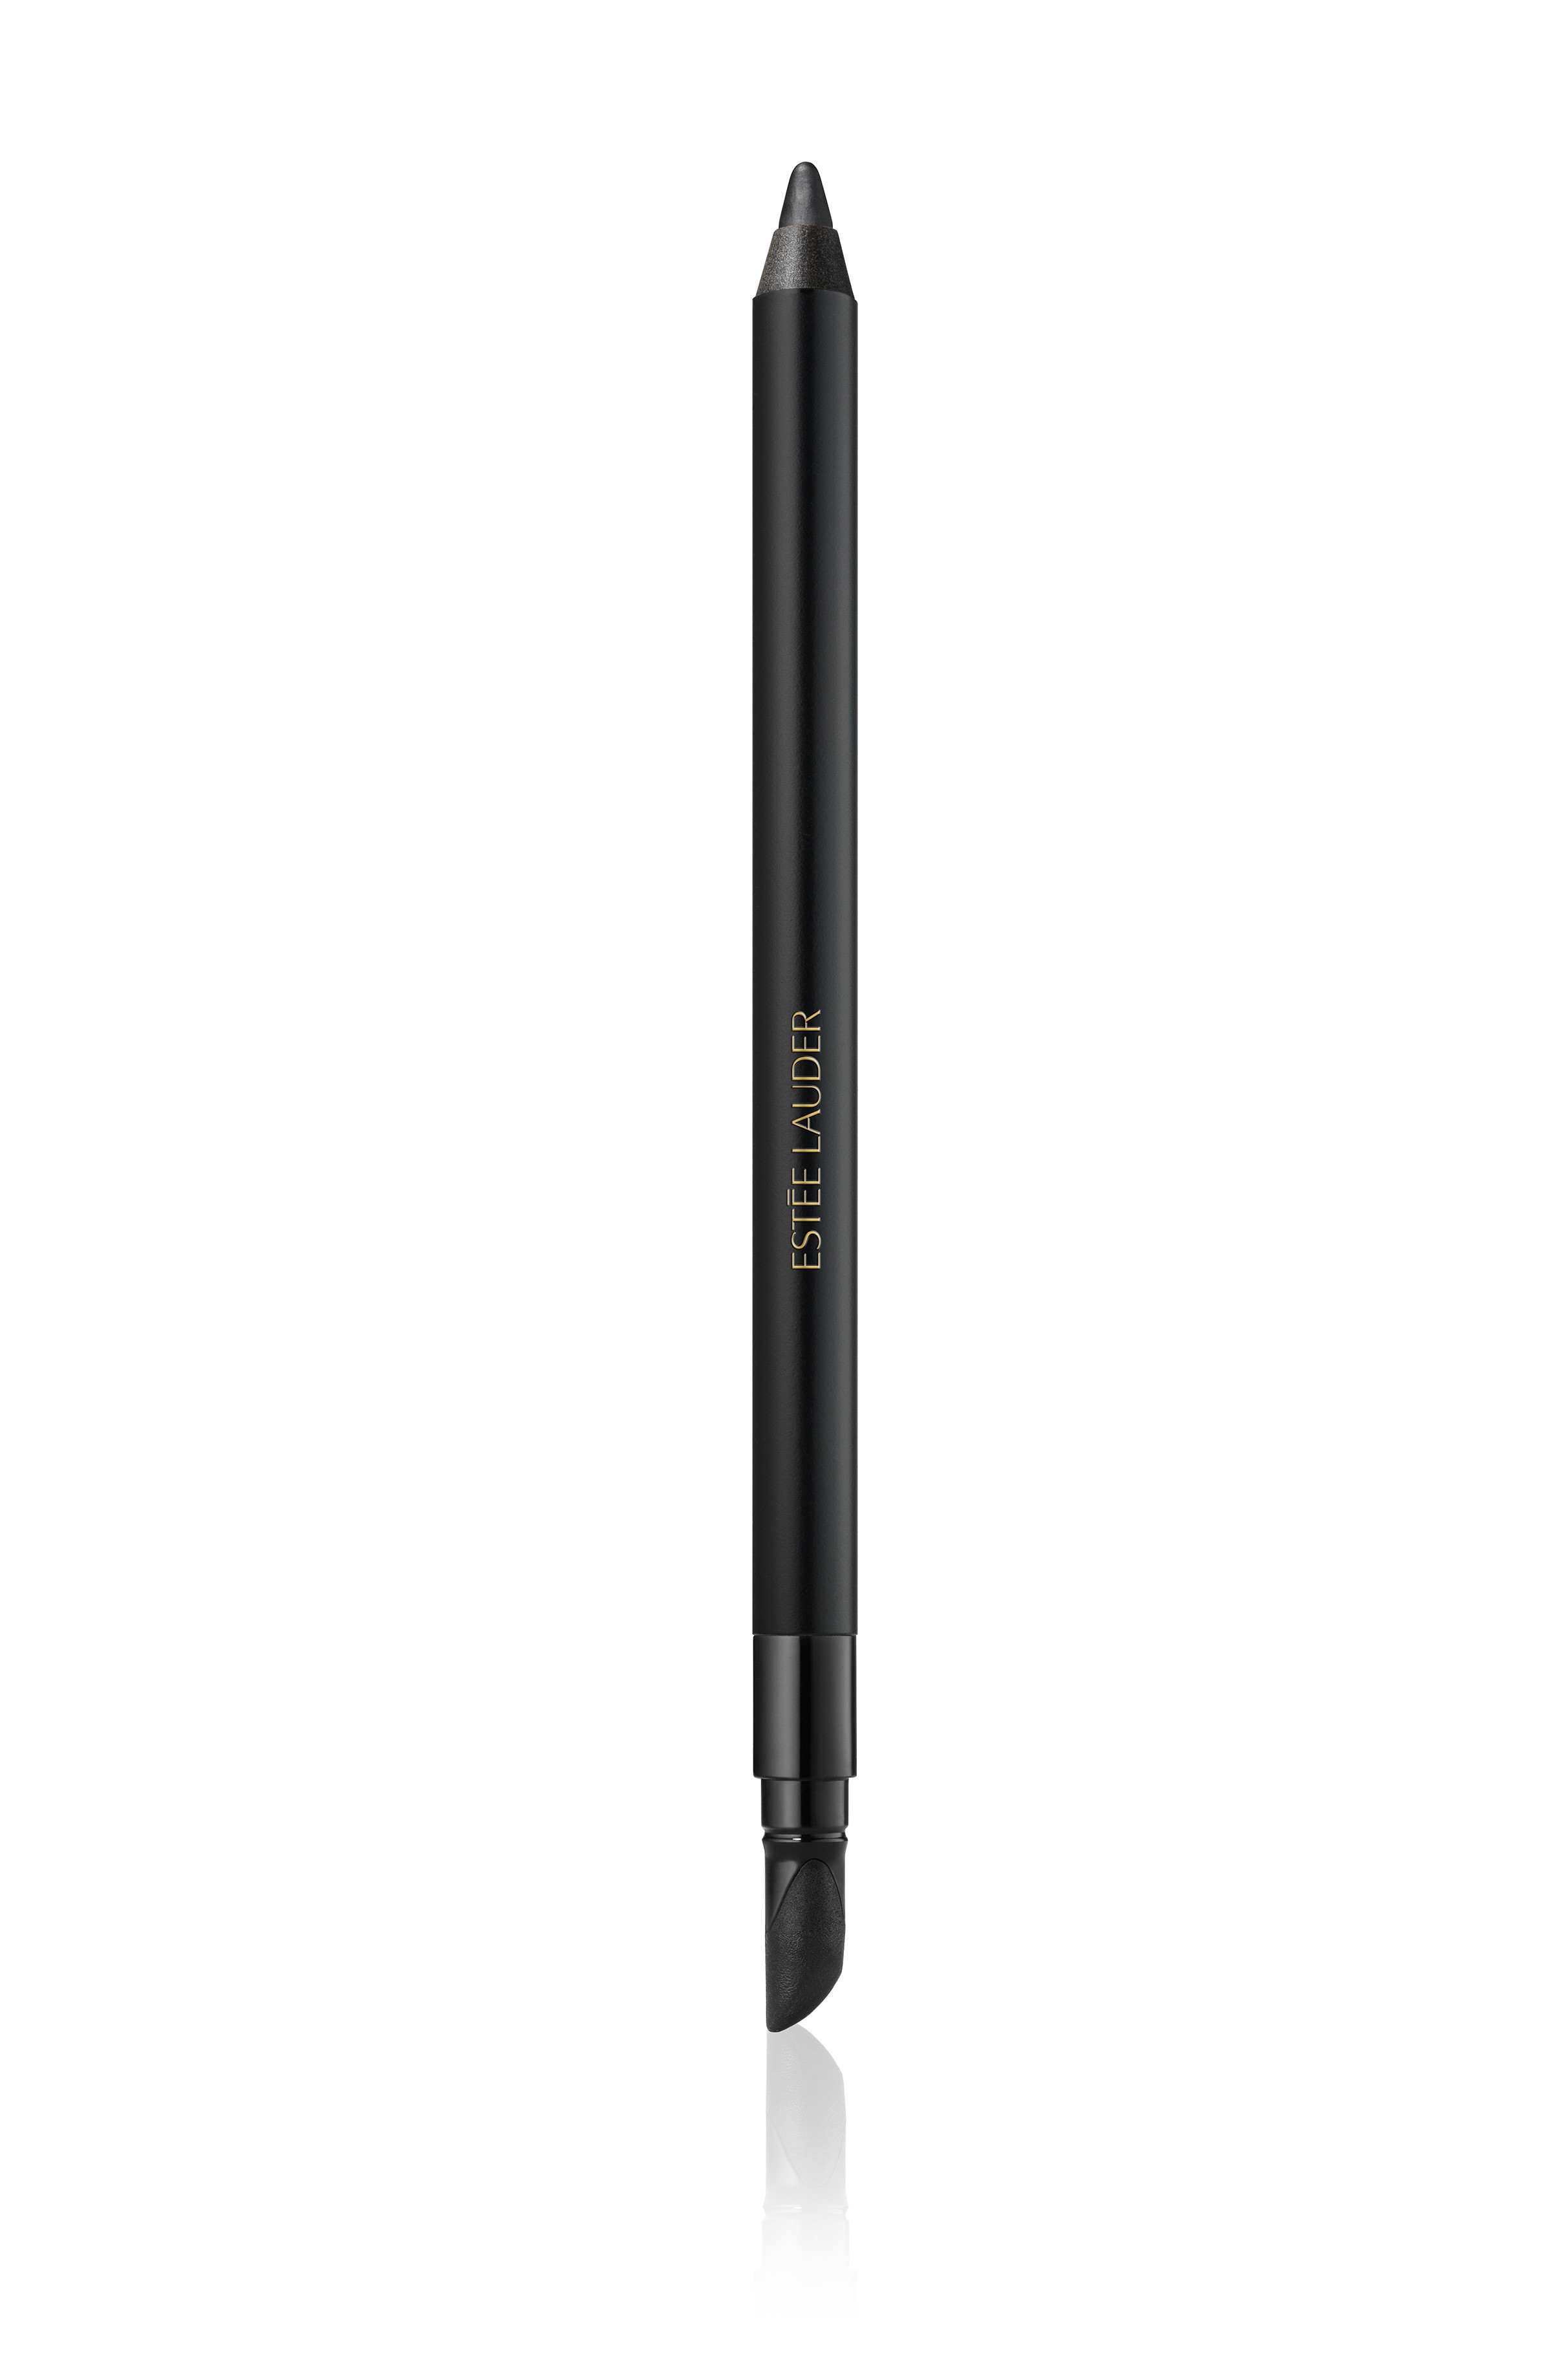 Double wear 24h waterproof gel eye pencil - 01 Onyx, Black, large image number 0